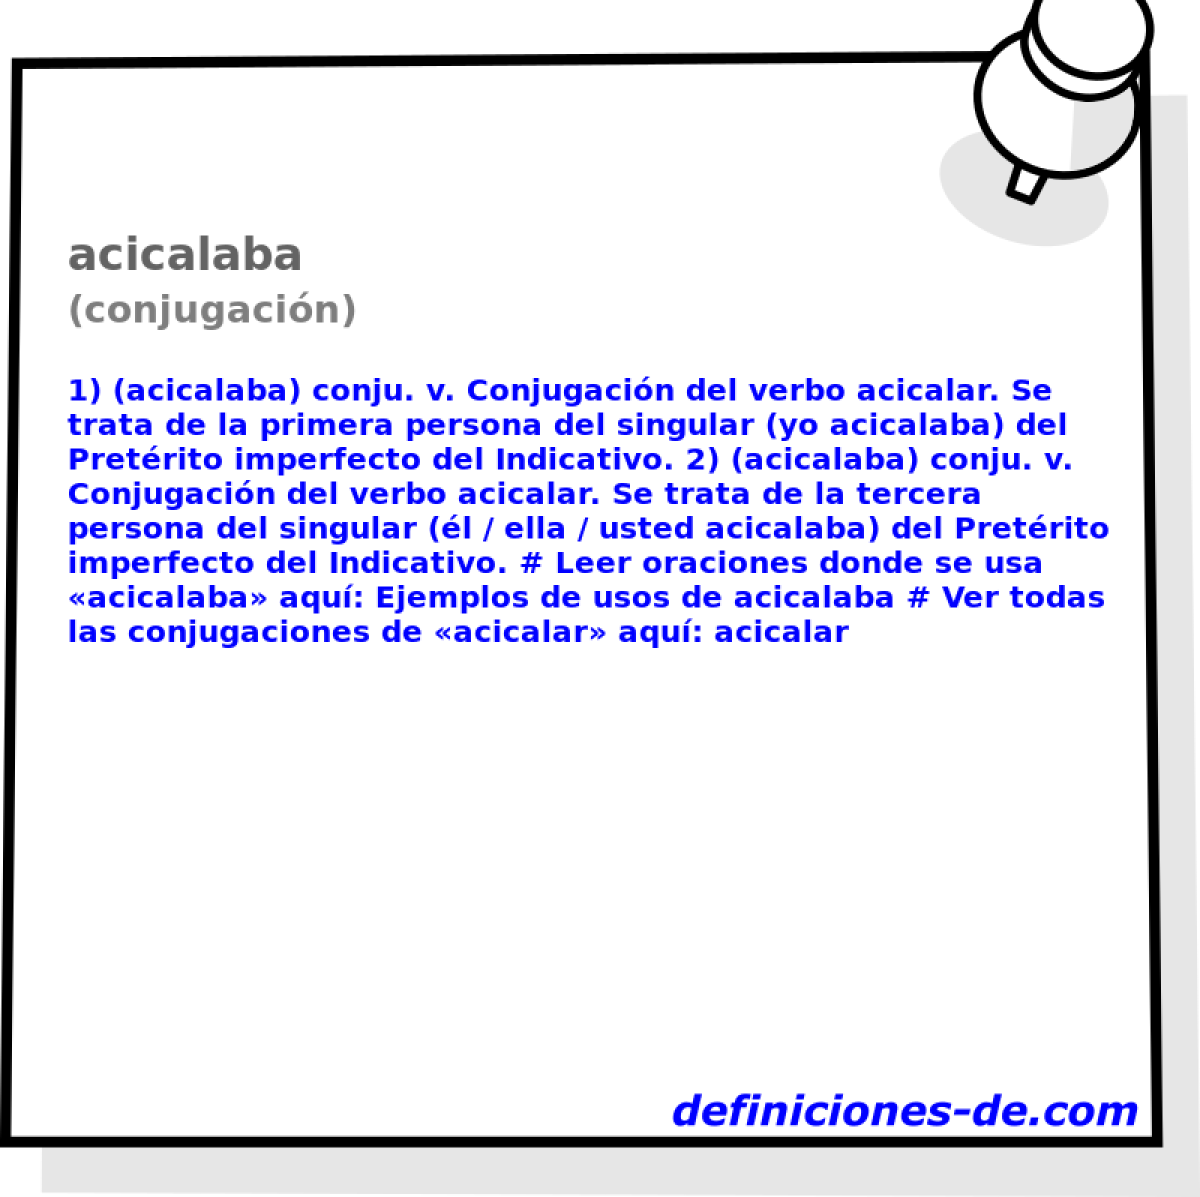 acicalaba (conjugacin)